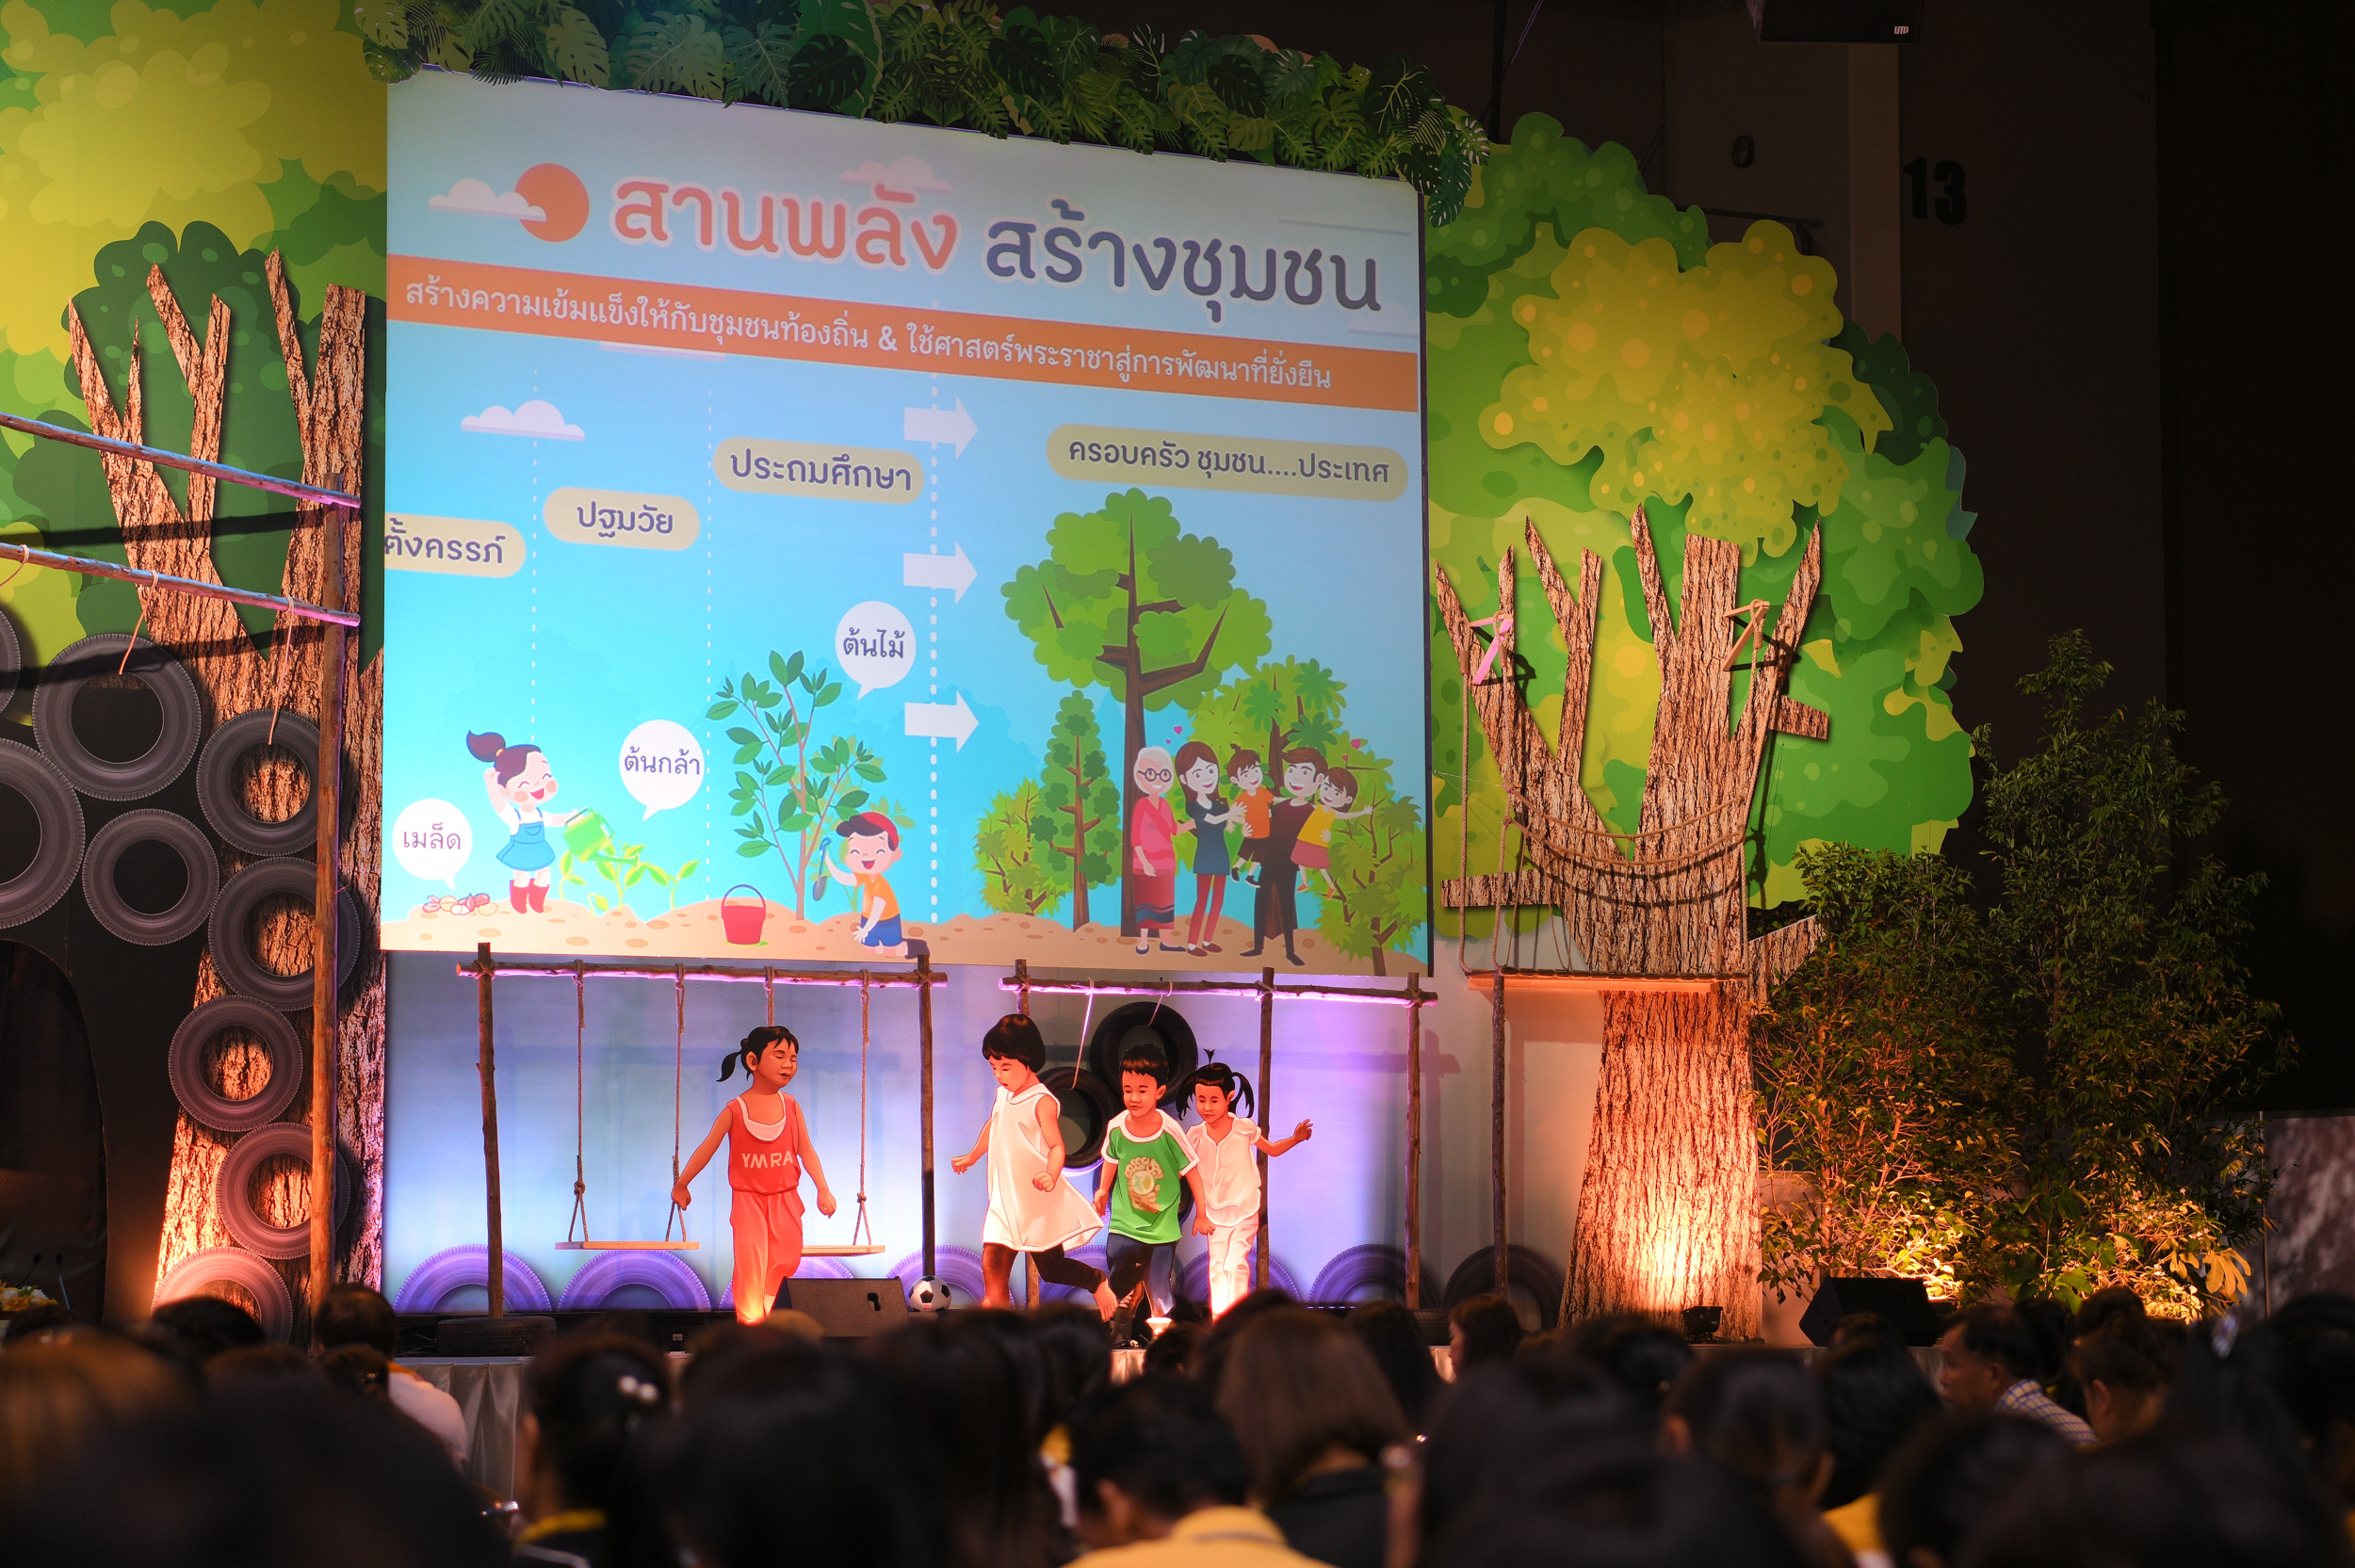 ยกเครื่องชุมชนสานพลังปั้นเด็กไทยทันโลก 4.0 thaihealth